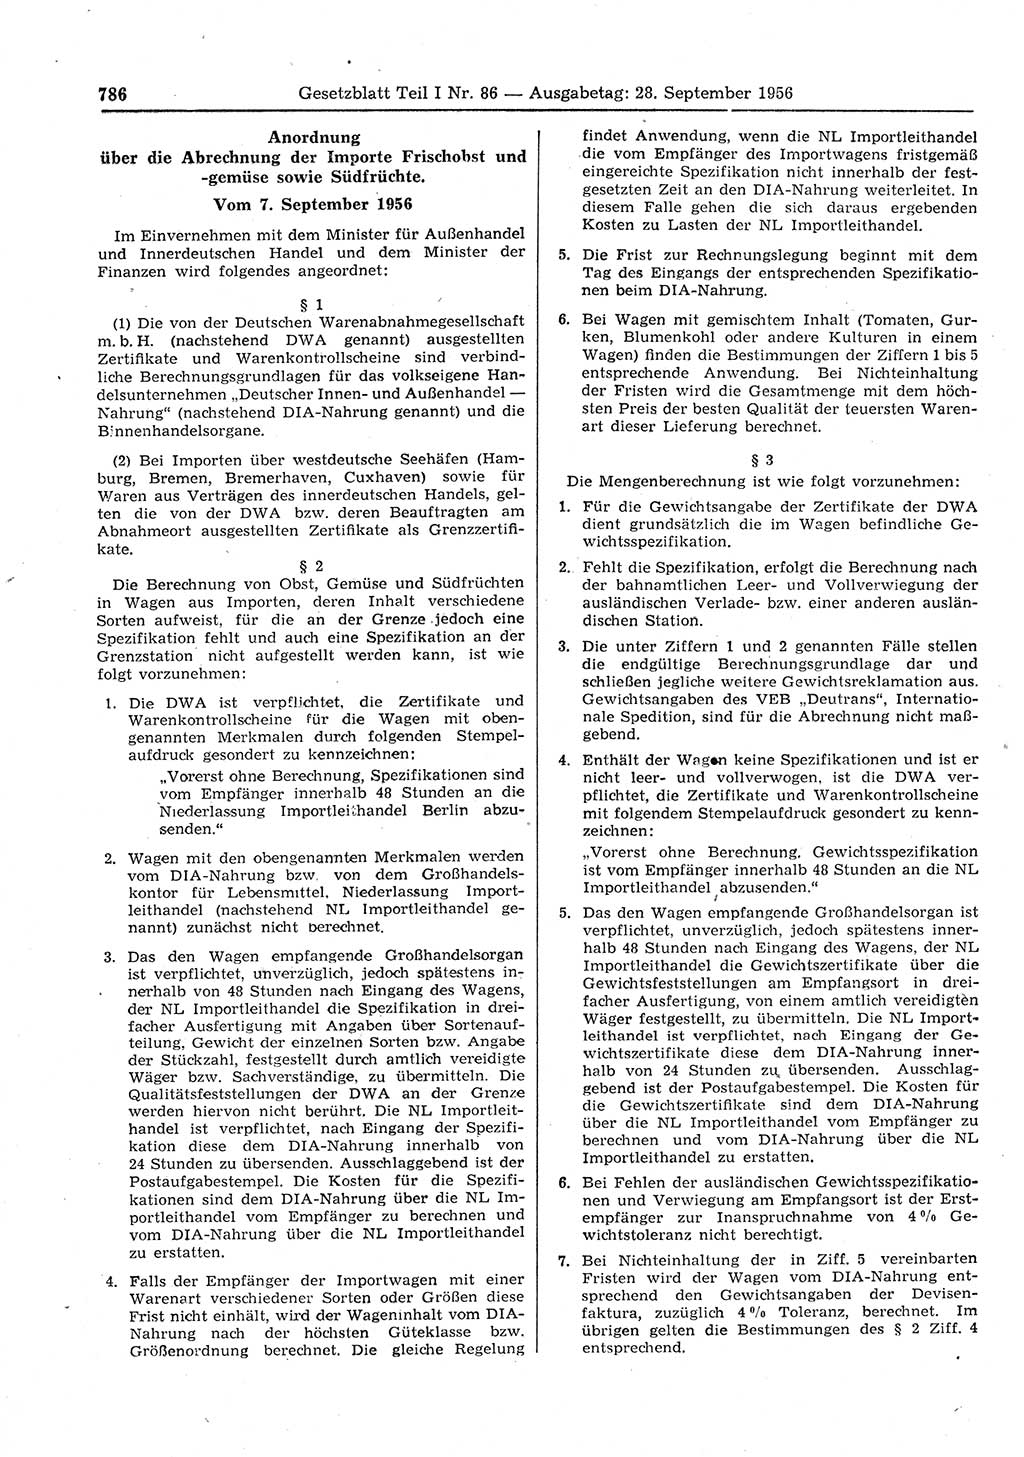 Gesetzblatt (GBl.) der Deutschen Demokratischen Republik (DDR) Teil Ⅰ 1956, Seite 786 (GBl. DDR Ⅰ 1956, S. 786)